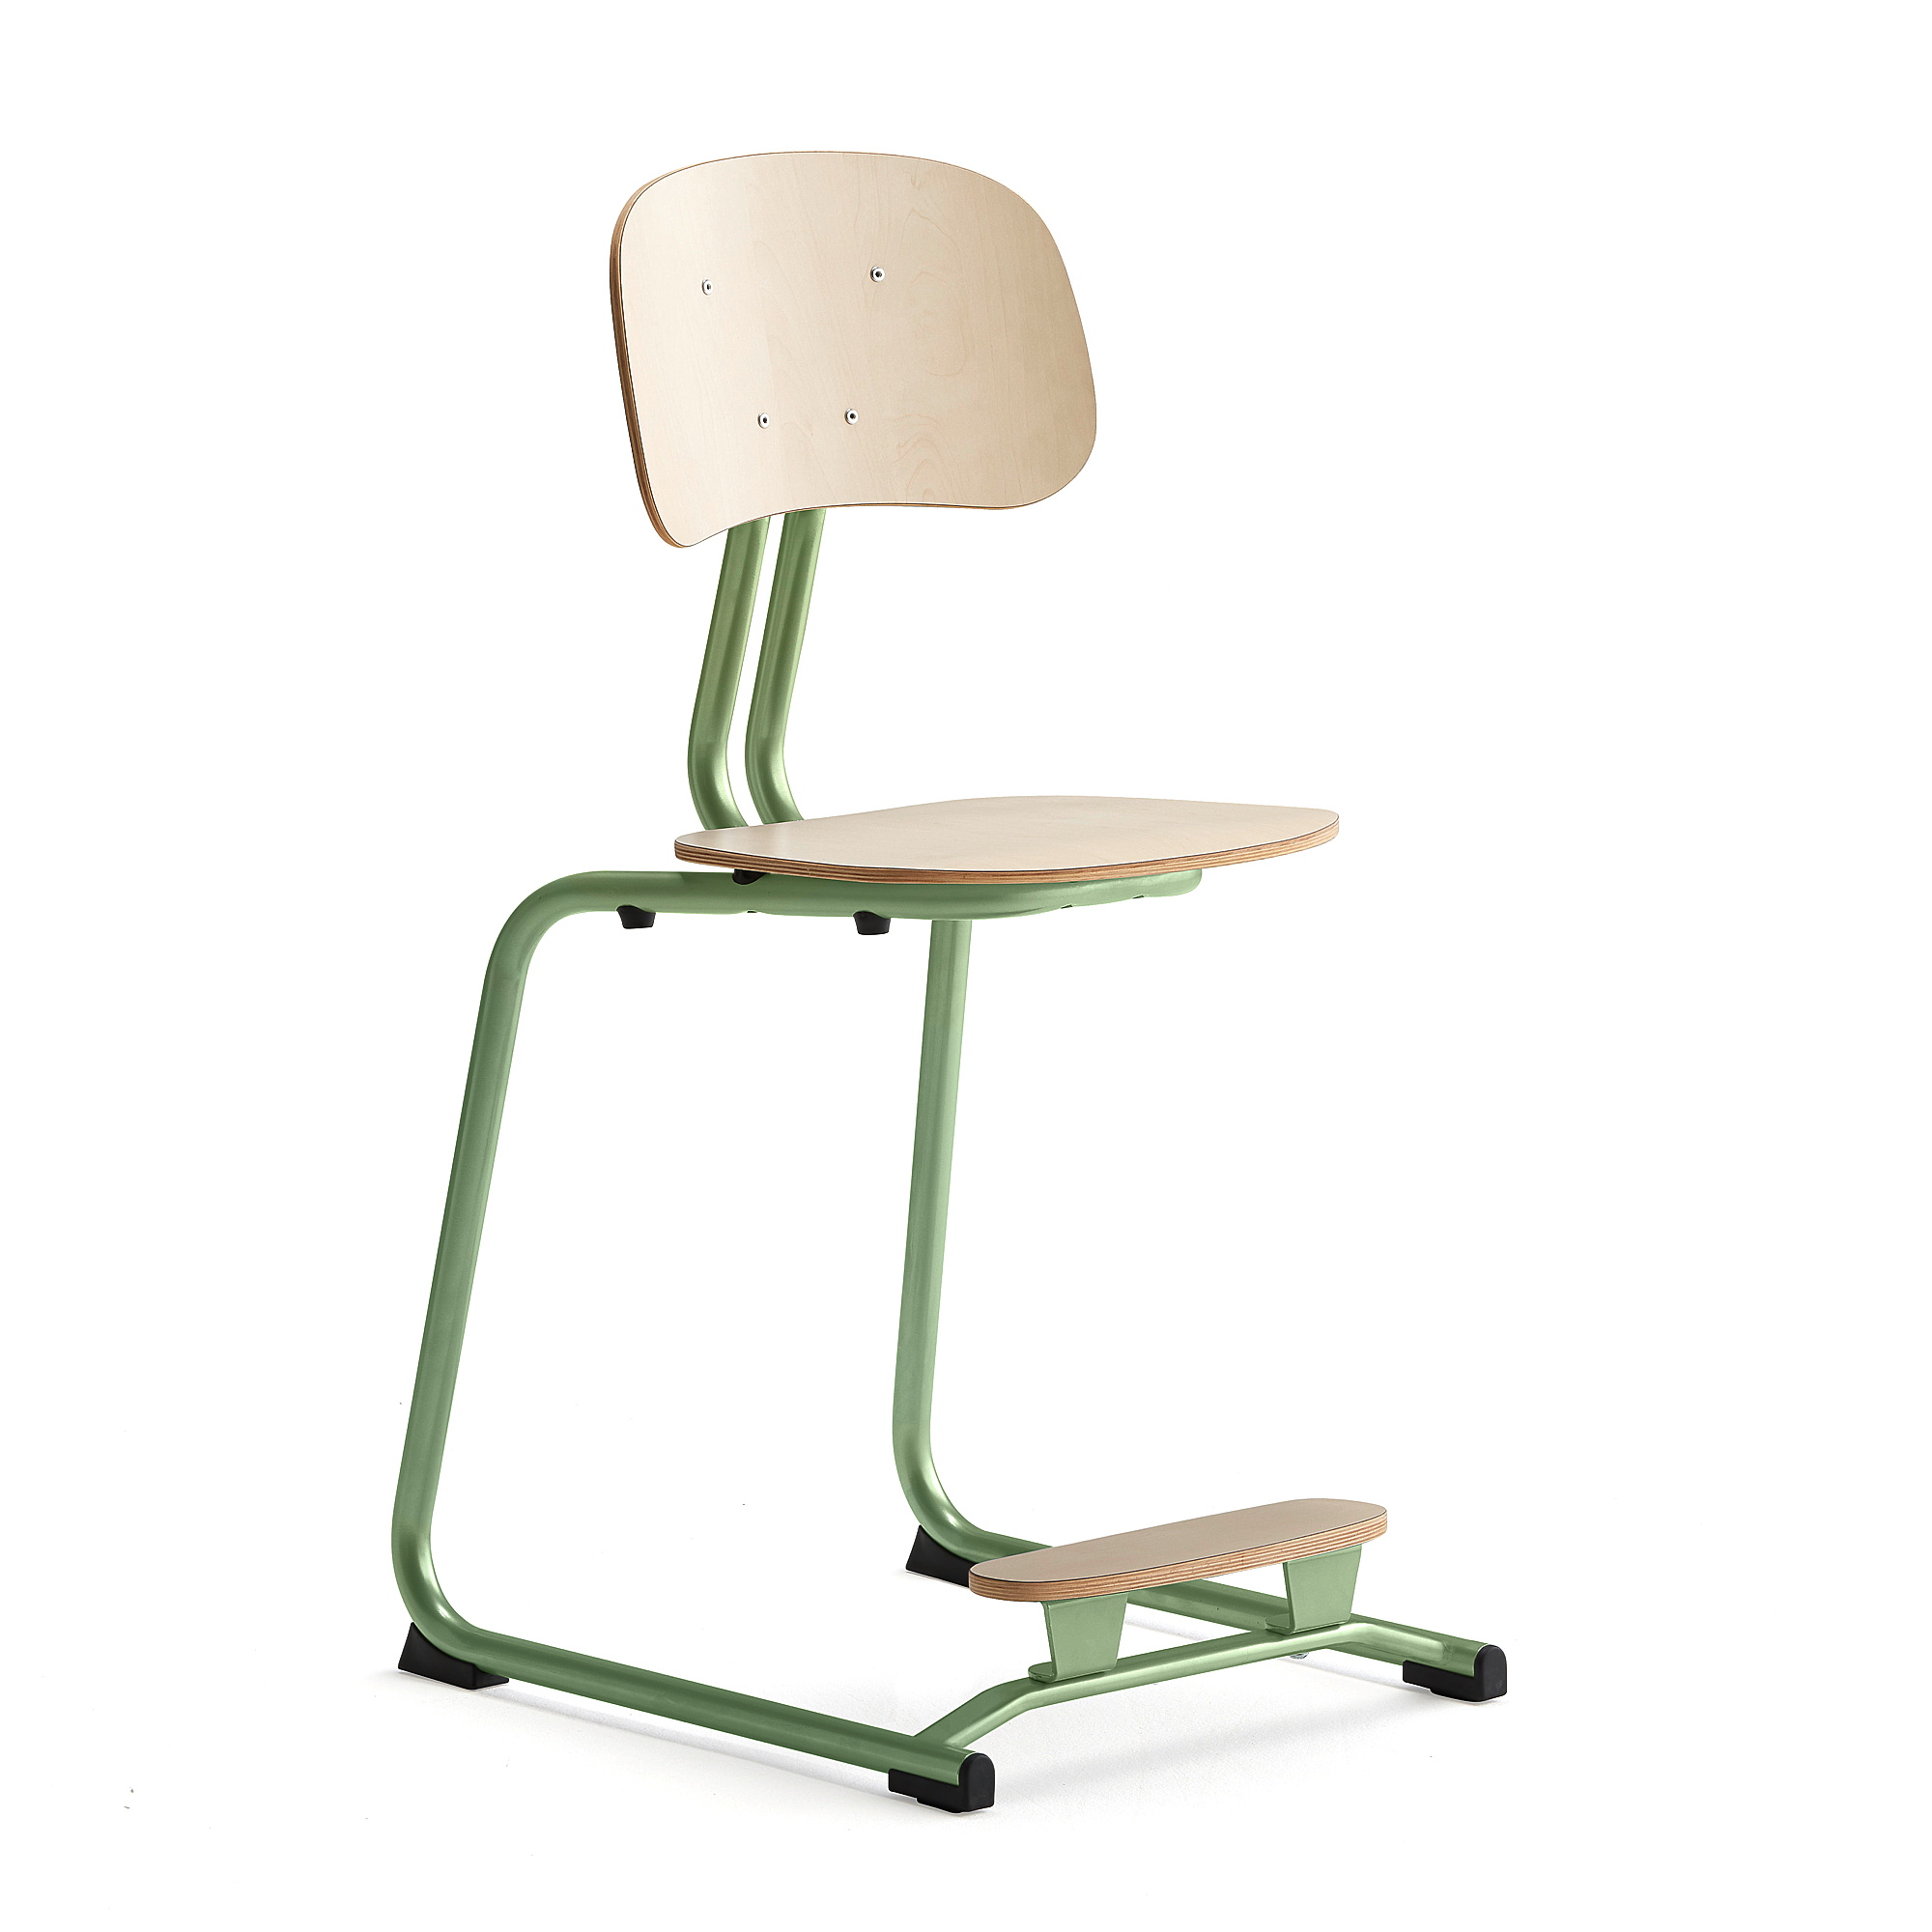 Školní židle YNGVE, ližinová podnož, výška 500 mm, zelená/bříza